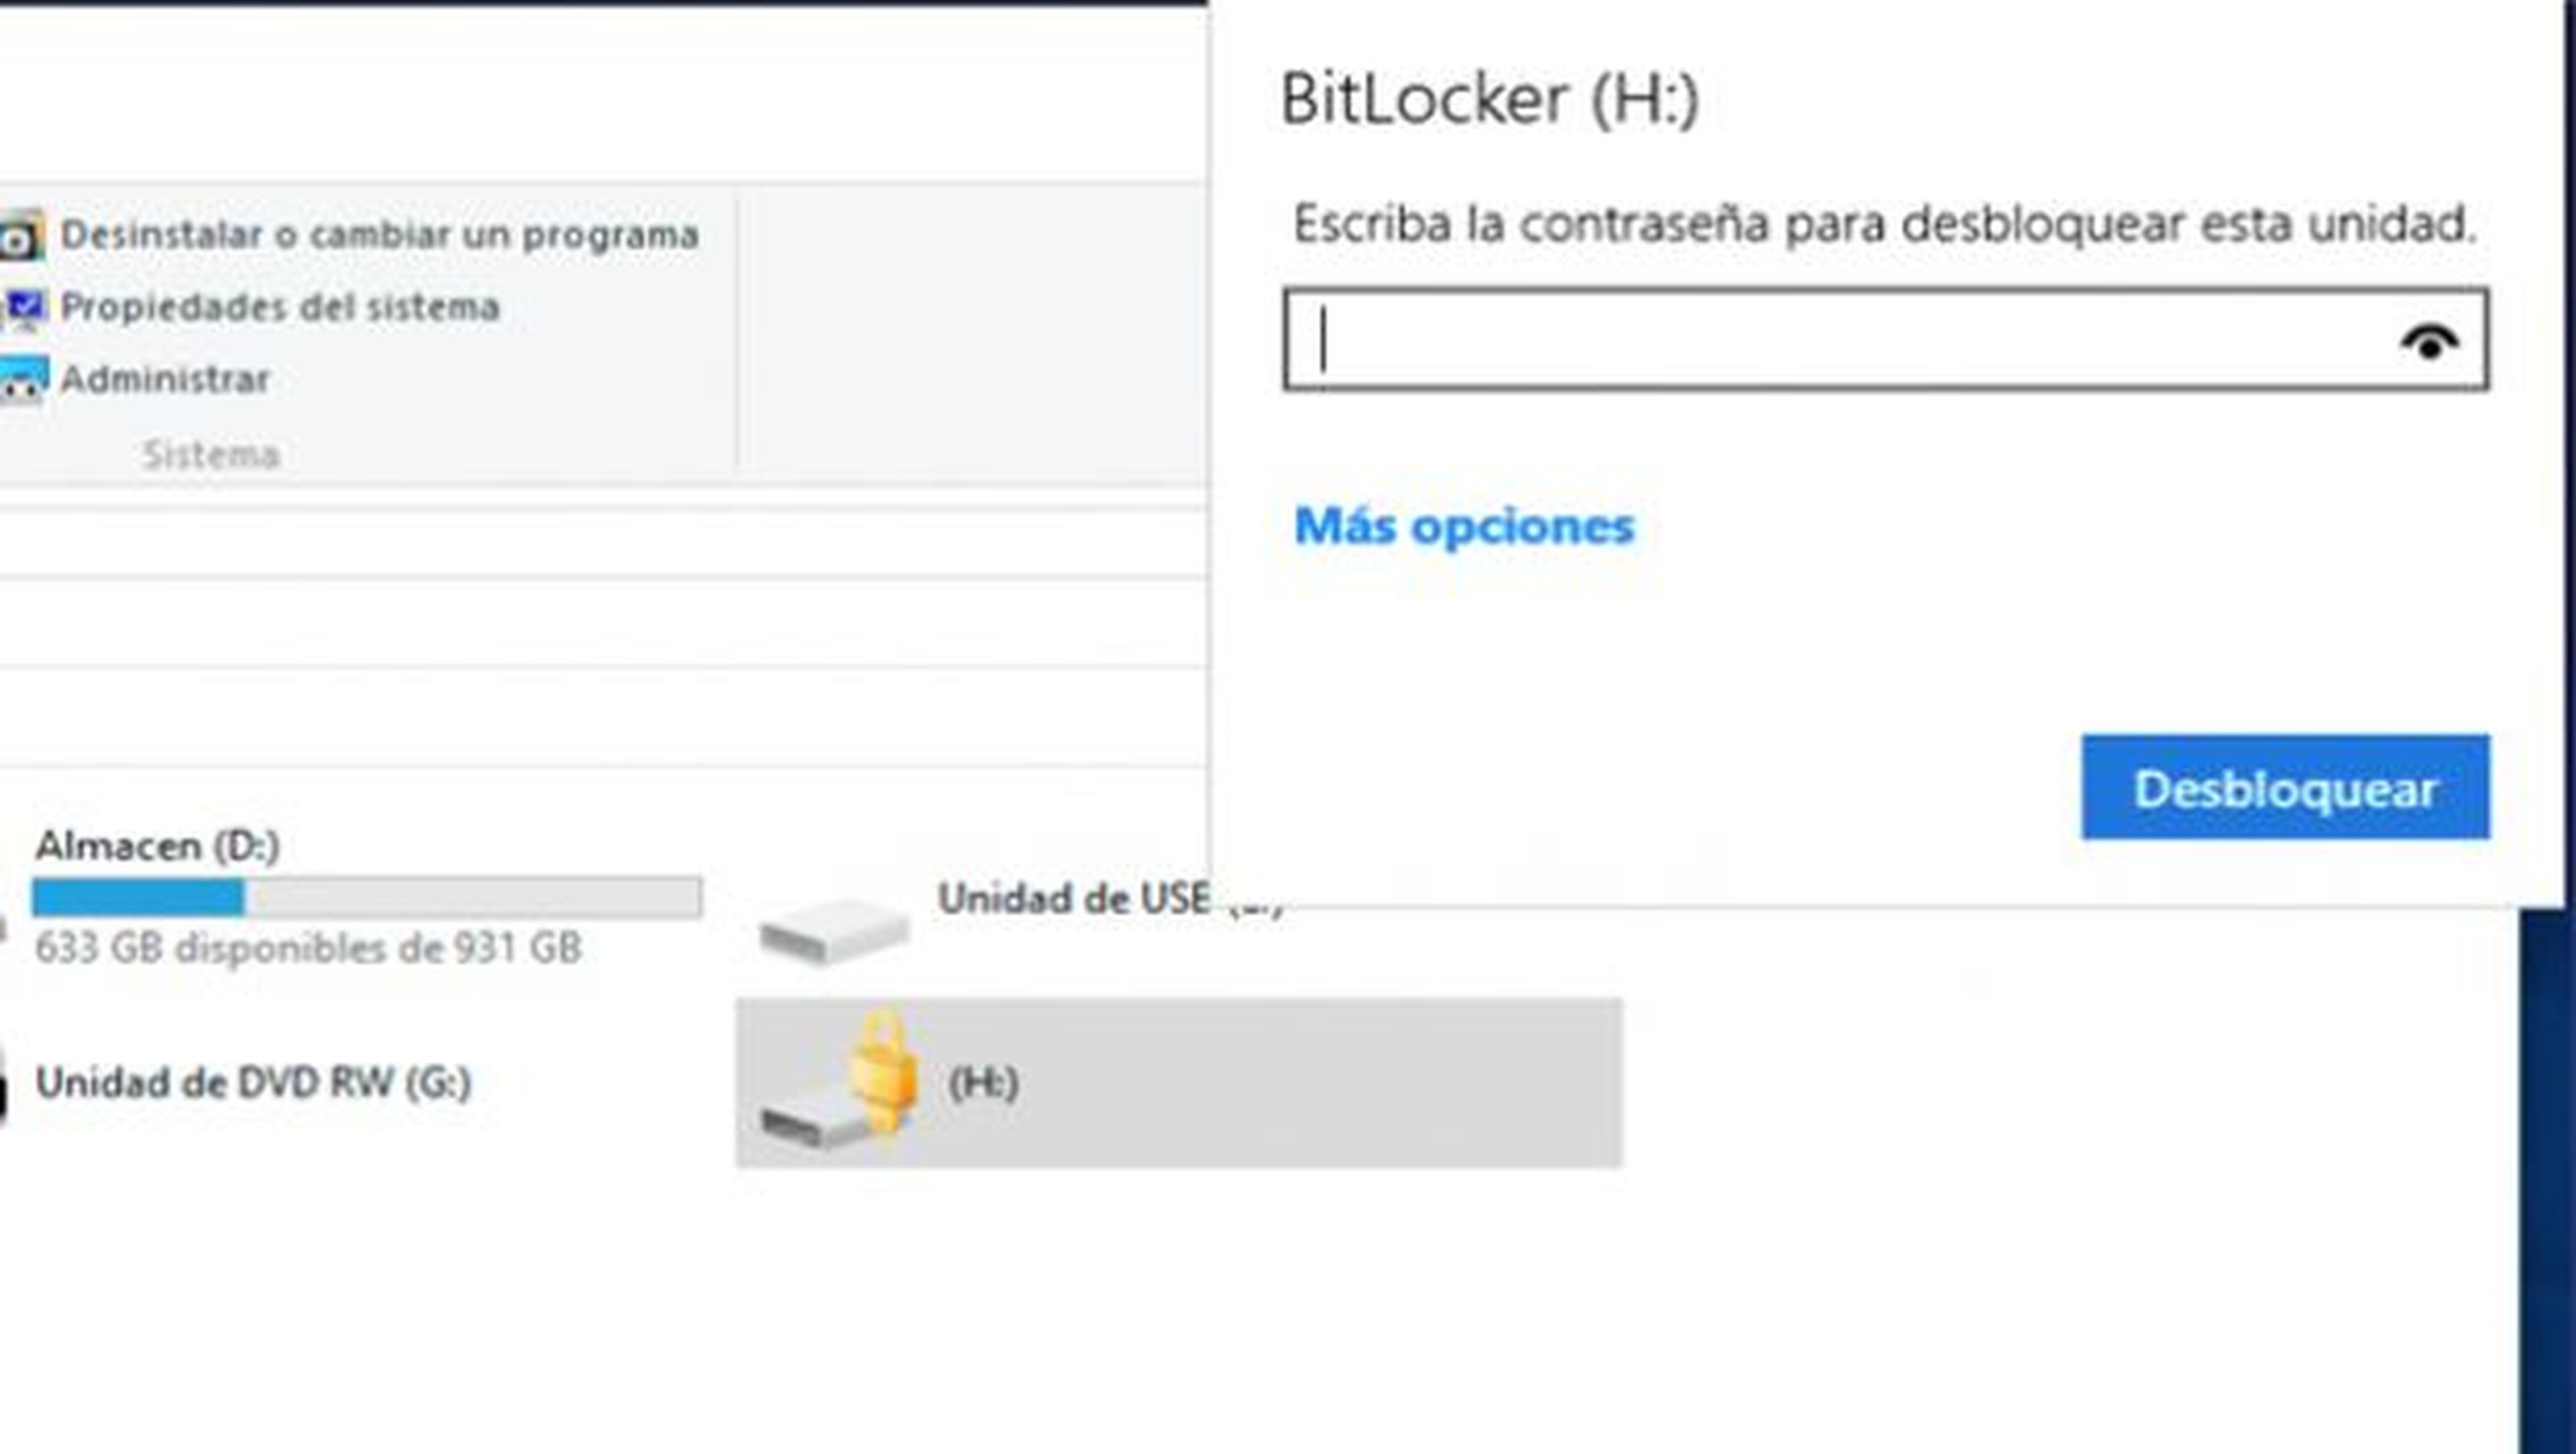 Nadie podrá acceder a tus archivos cifrados con BitLocker sin la contraseña correcta.